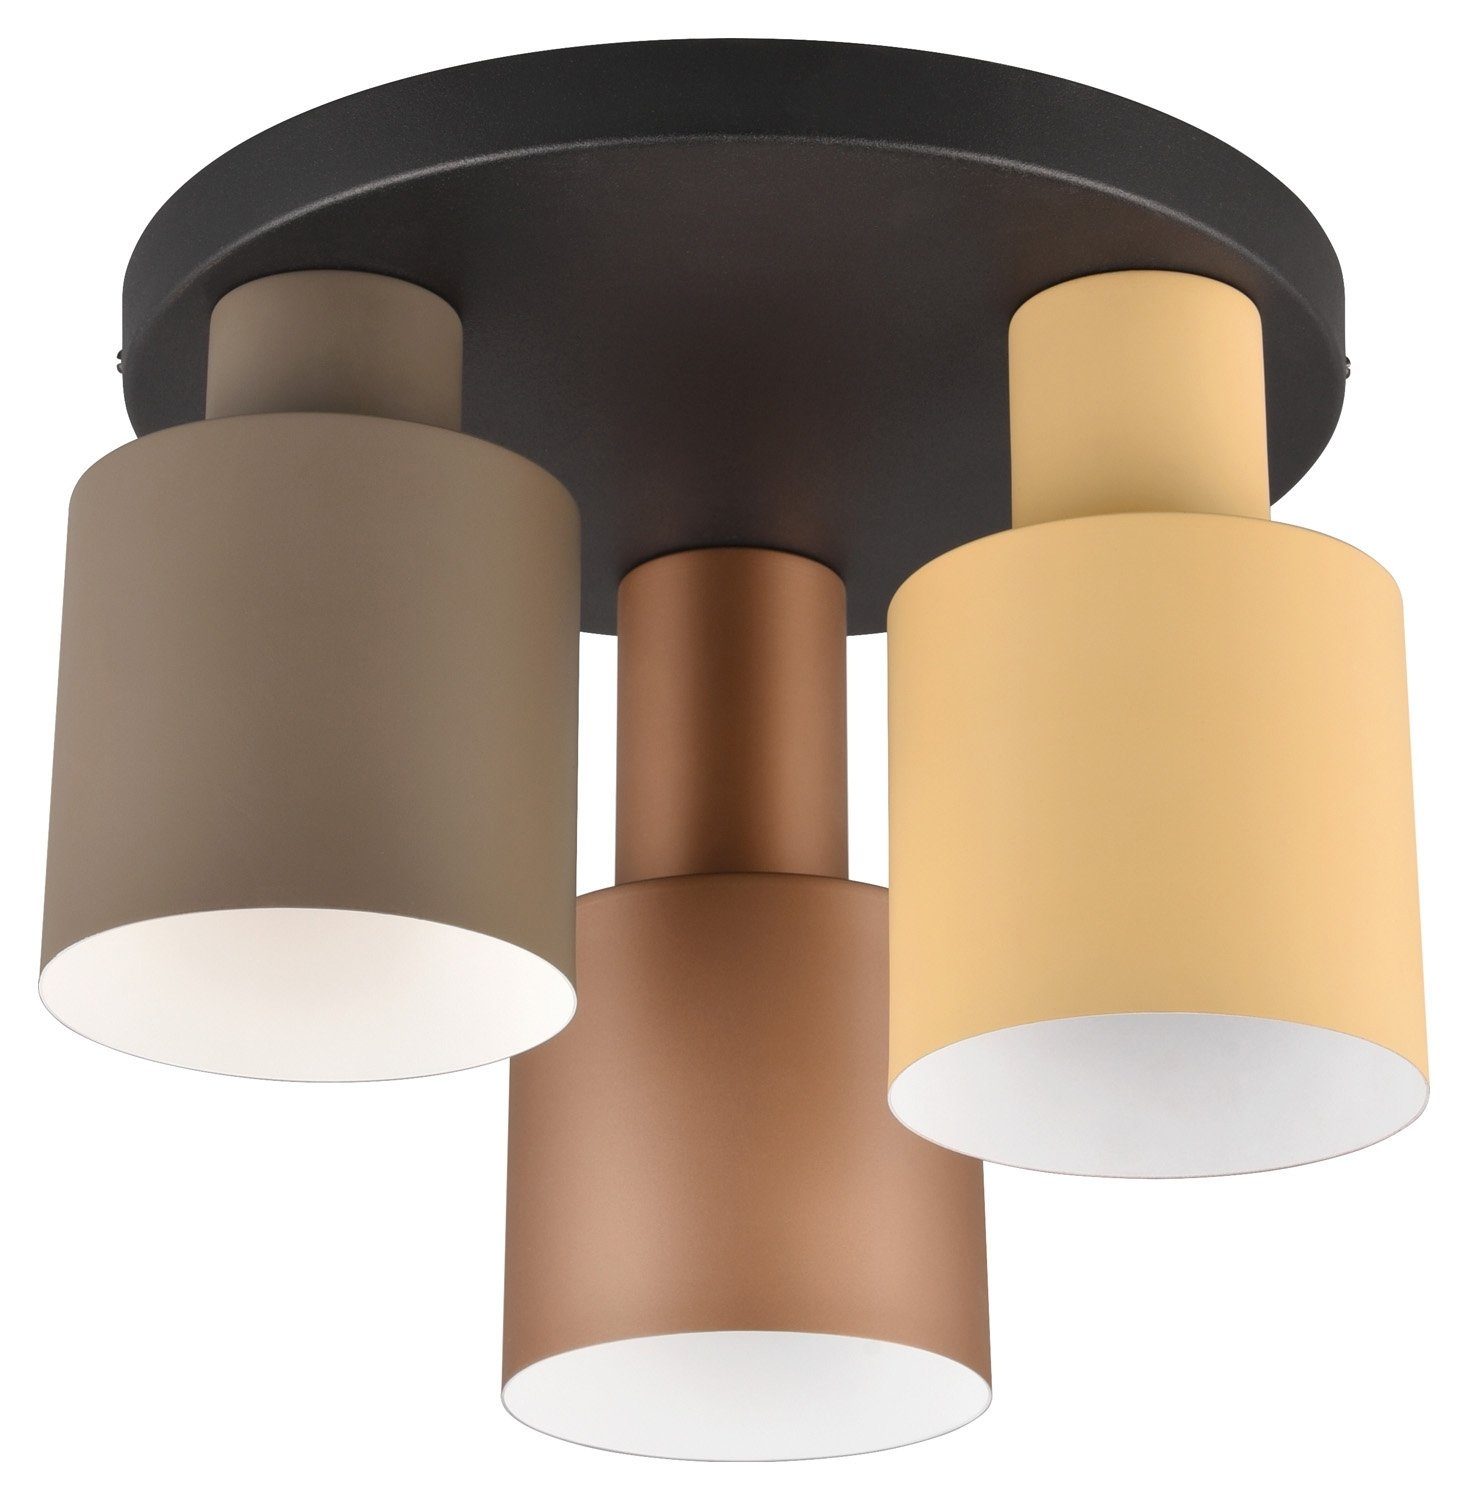 TRIO Leuchten Deckenleuchte Agudo, ohne Leuchtmittel,  Multicolor-Lampenschirme, ø 30 cm, E27, modernes Design, Deckenleuchte in  beige, braun und taupe | Deckenlampen